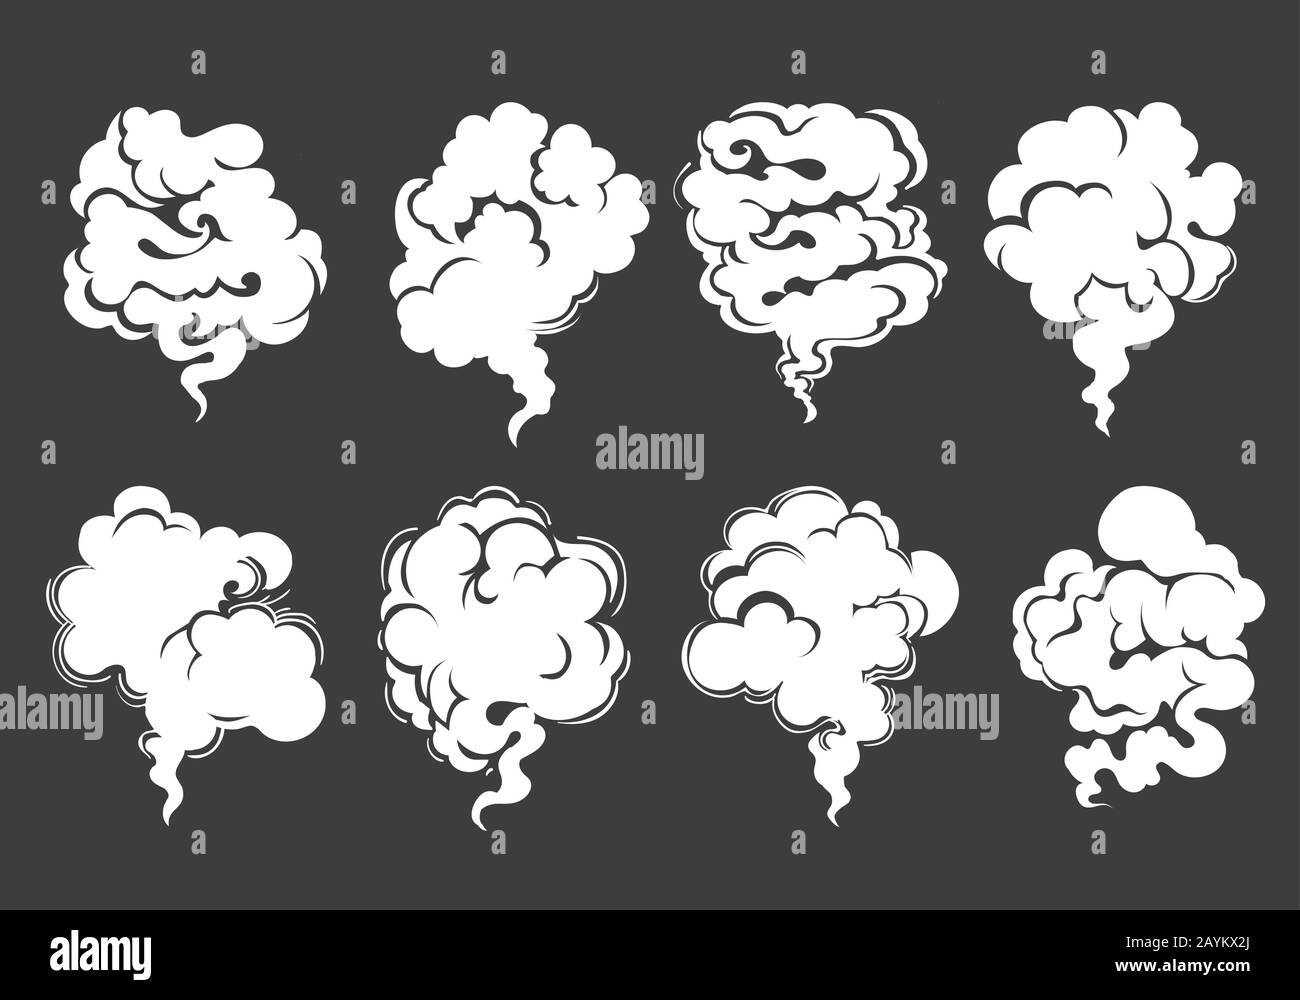 Ocho nubes blancas de humo o vapor sobre fondo negro dibujado en estilo de dibujos animados. Ilustración vectorial. Ilustración del Vector